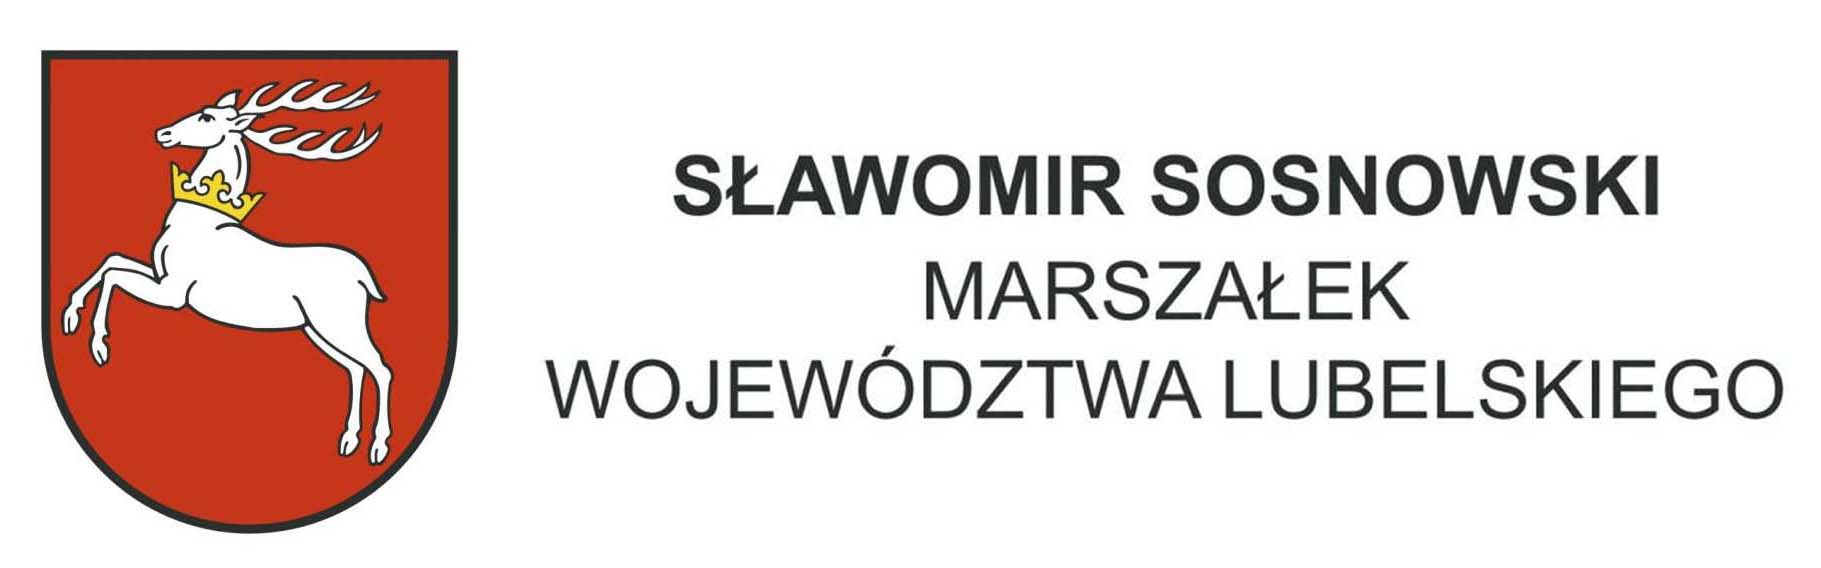 logo patronat marszalek Sosnowskib